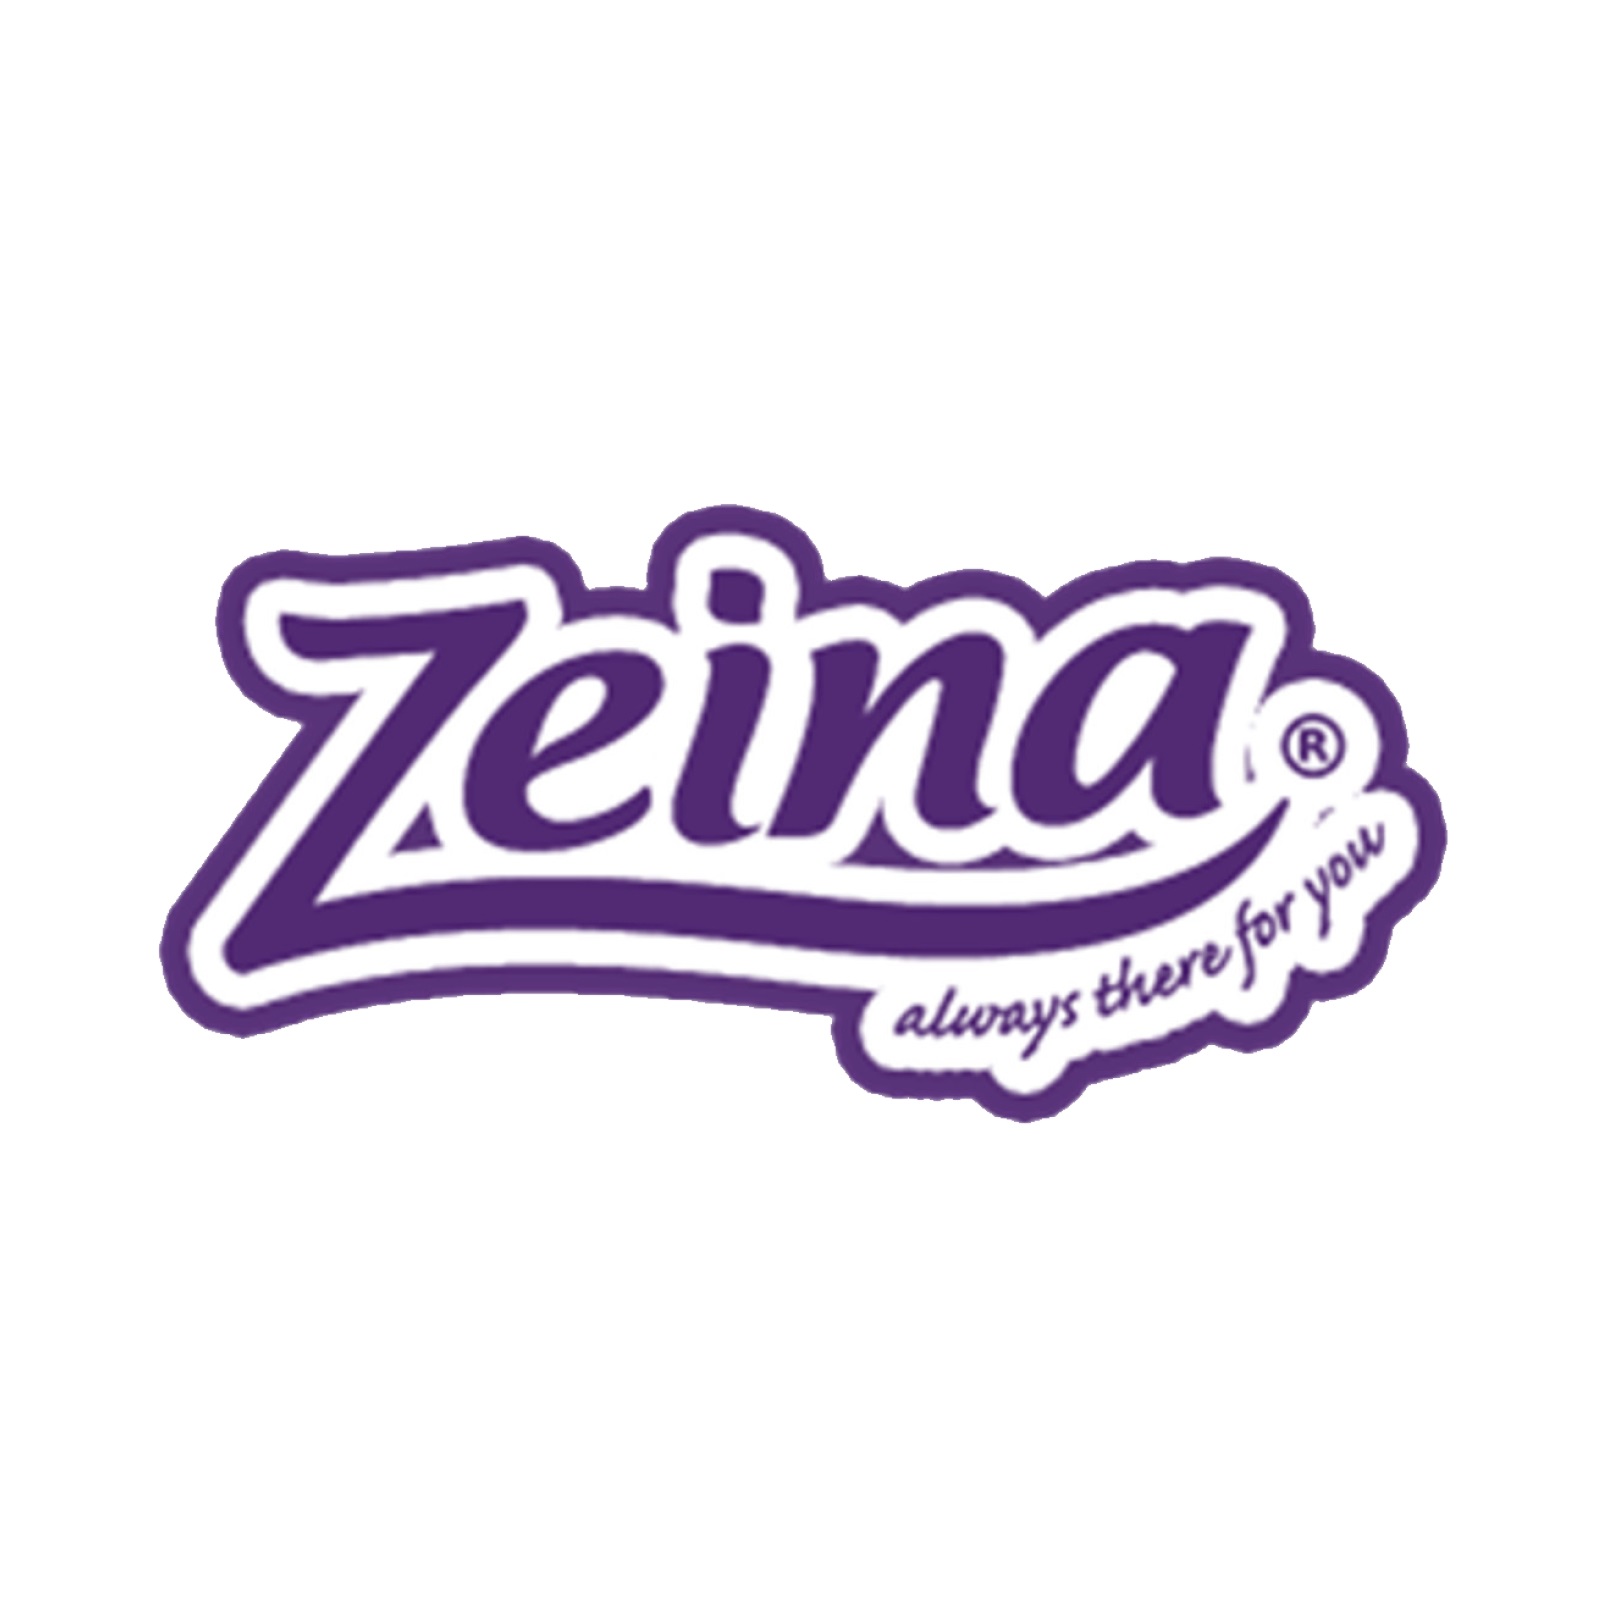 ZIena Group